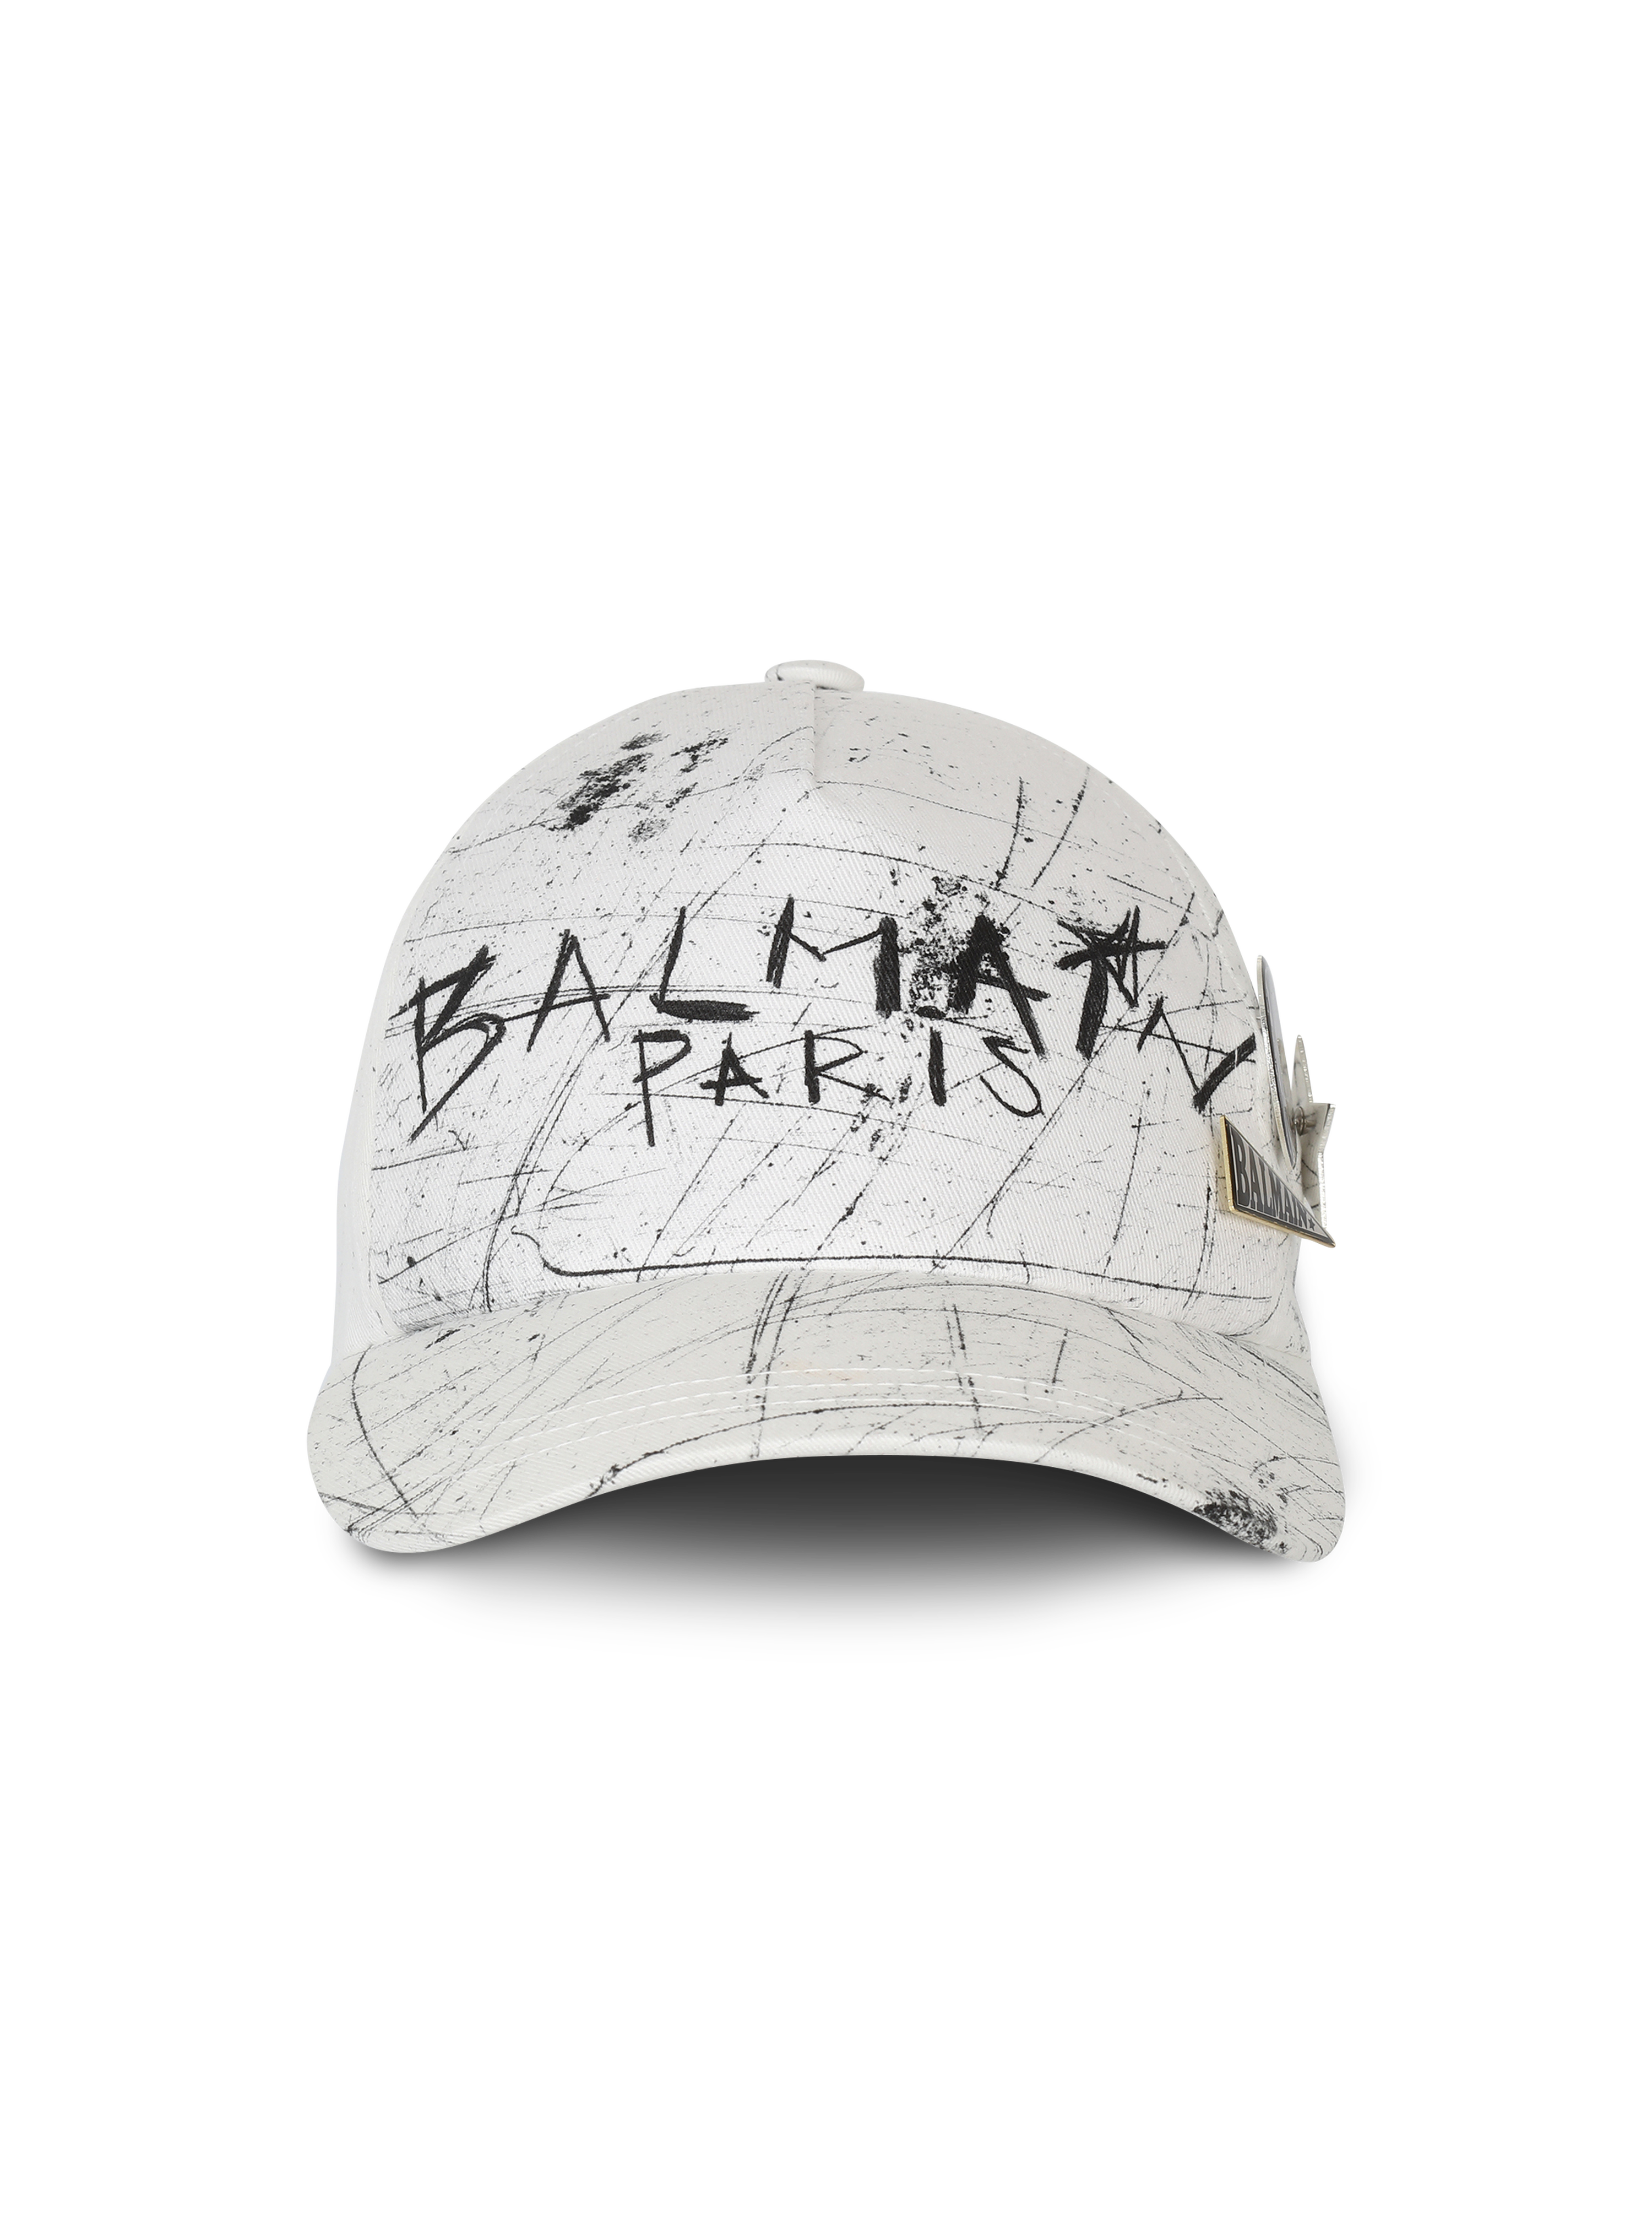 Cappellino in cotone con logo Balmain graffiti, bianco